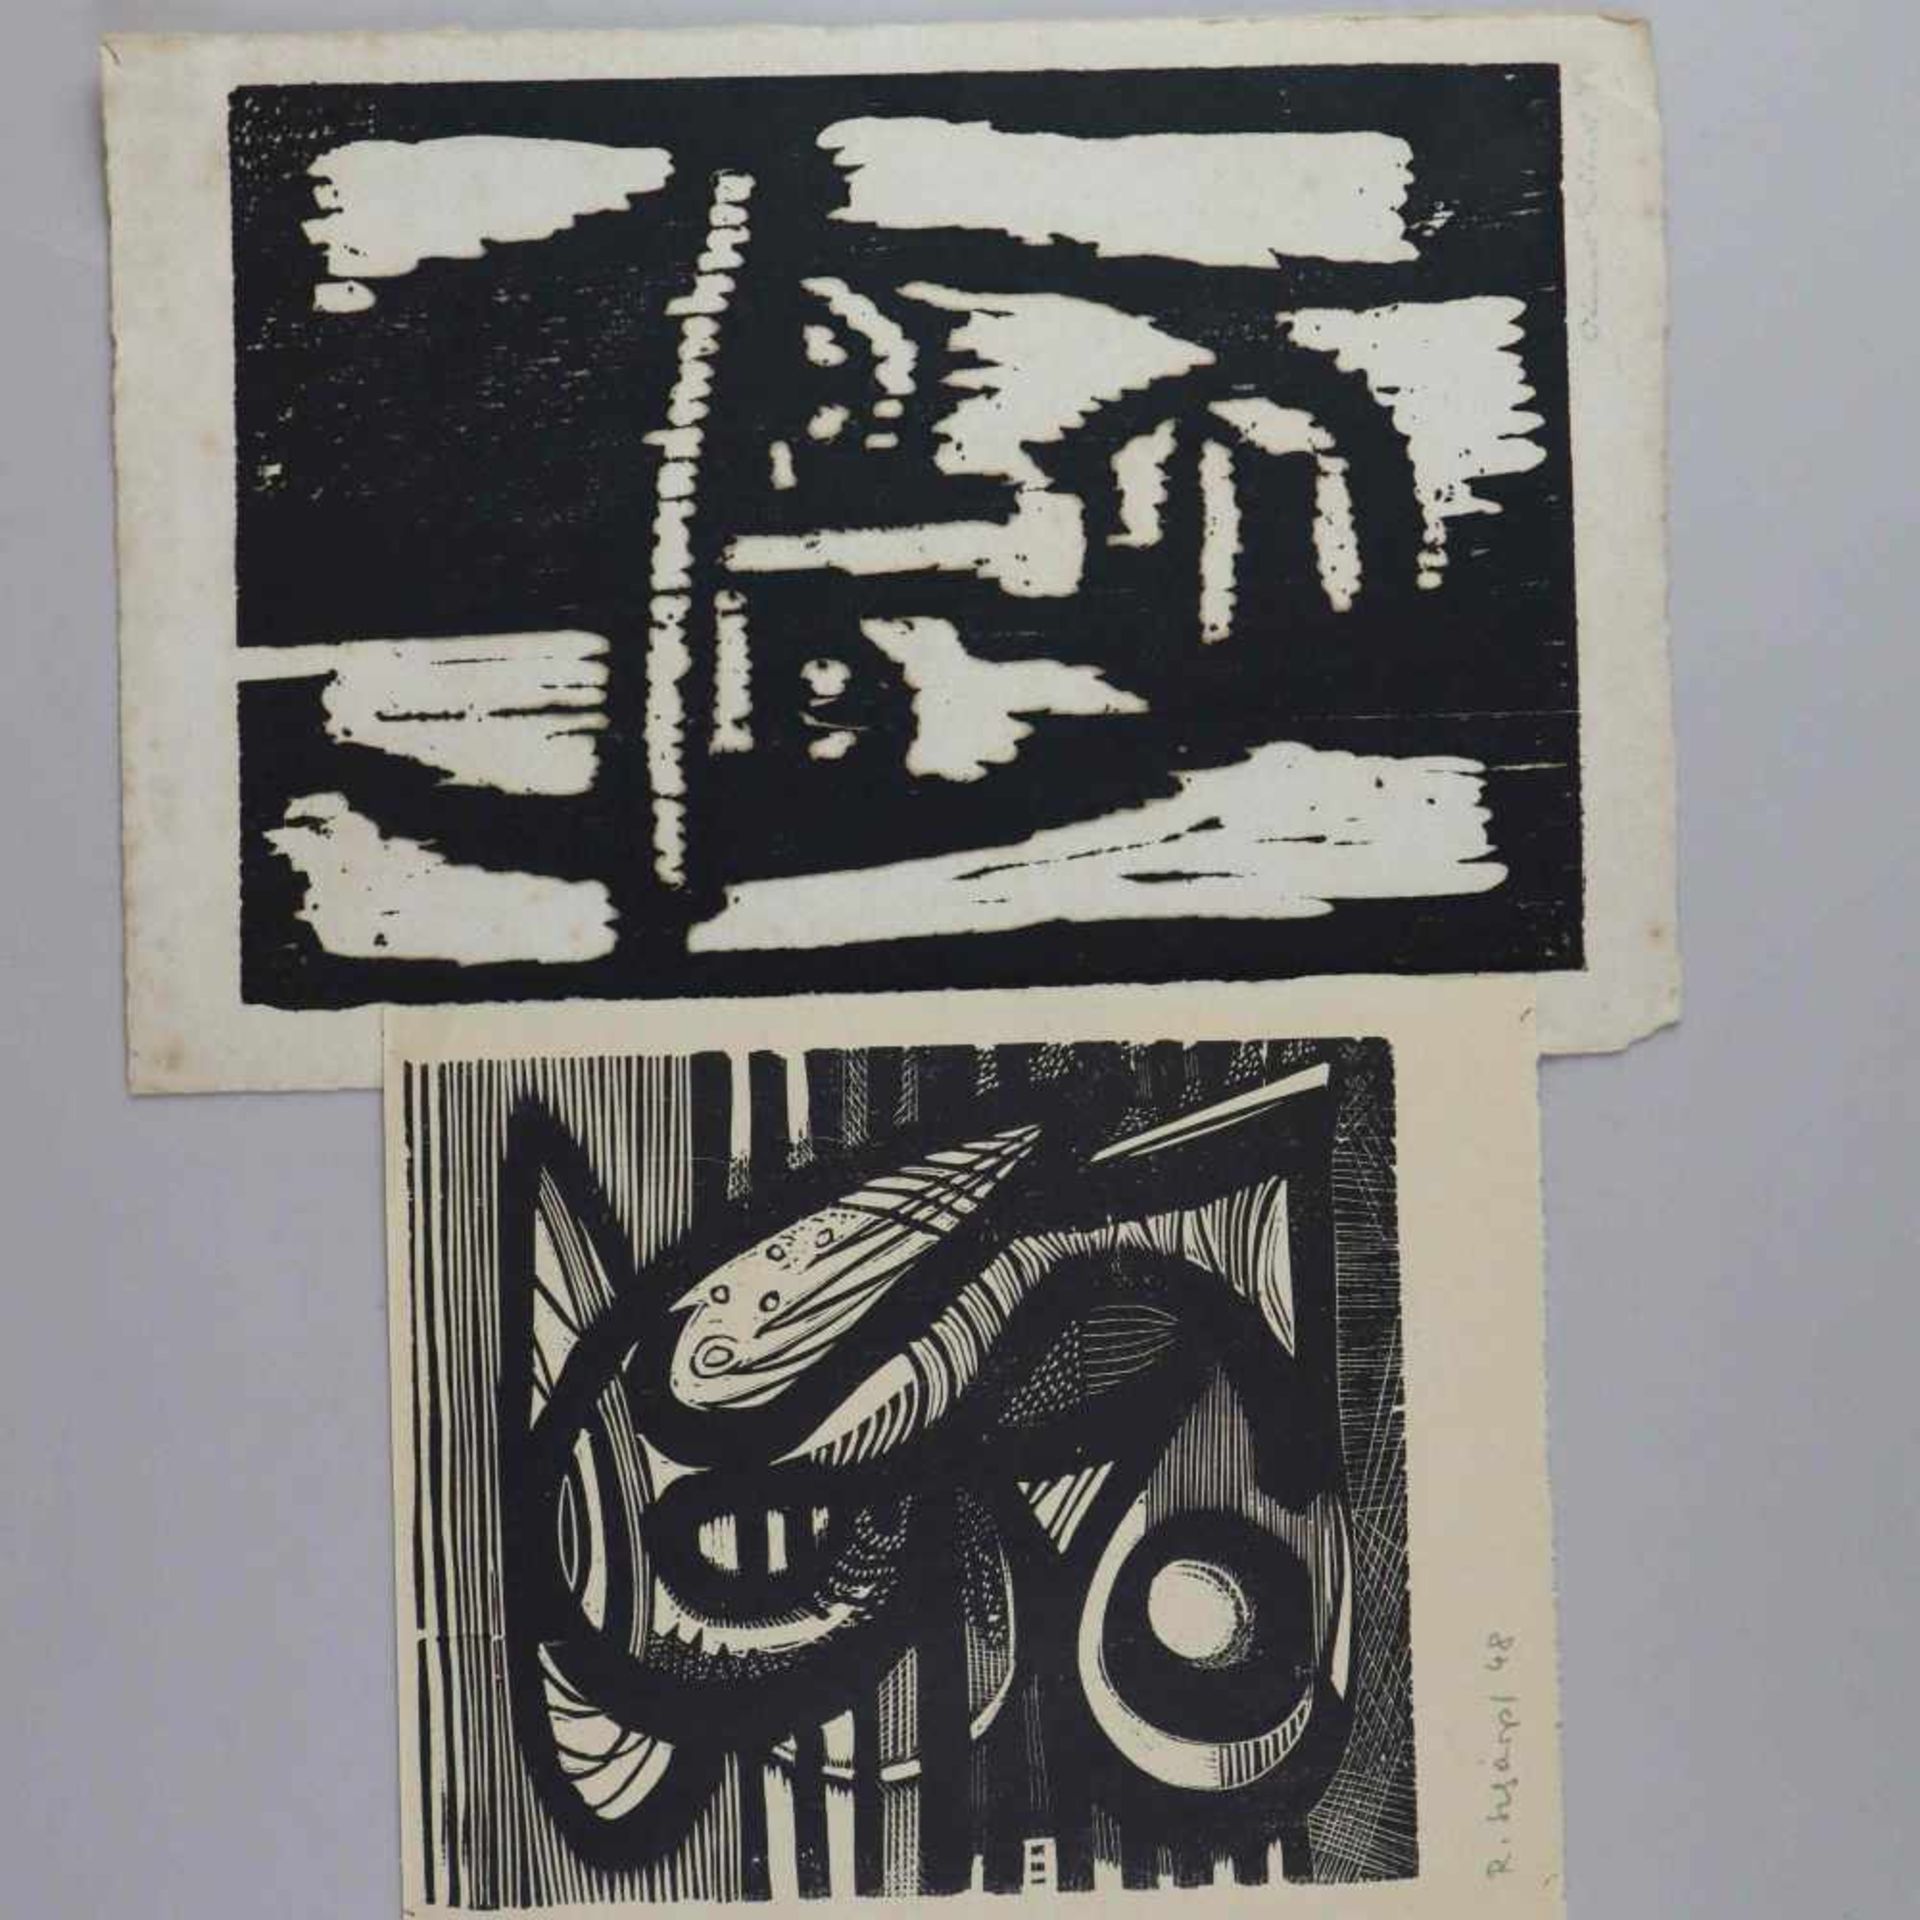 Eitner, Otmar (1929-2008) - Mappe mit Holz-Linolschnitten, 1949/50, Mappe innen bez."Eine kleine - Image 4 of 8